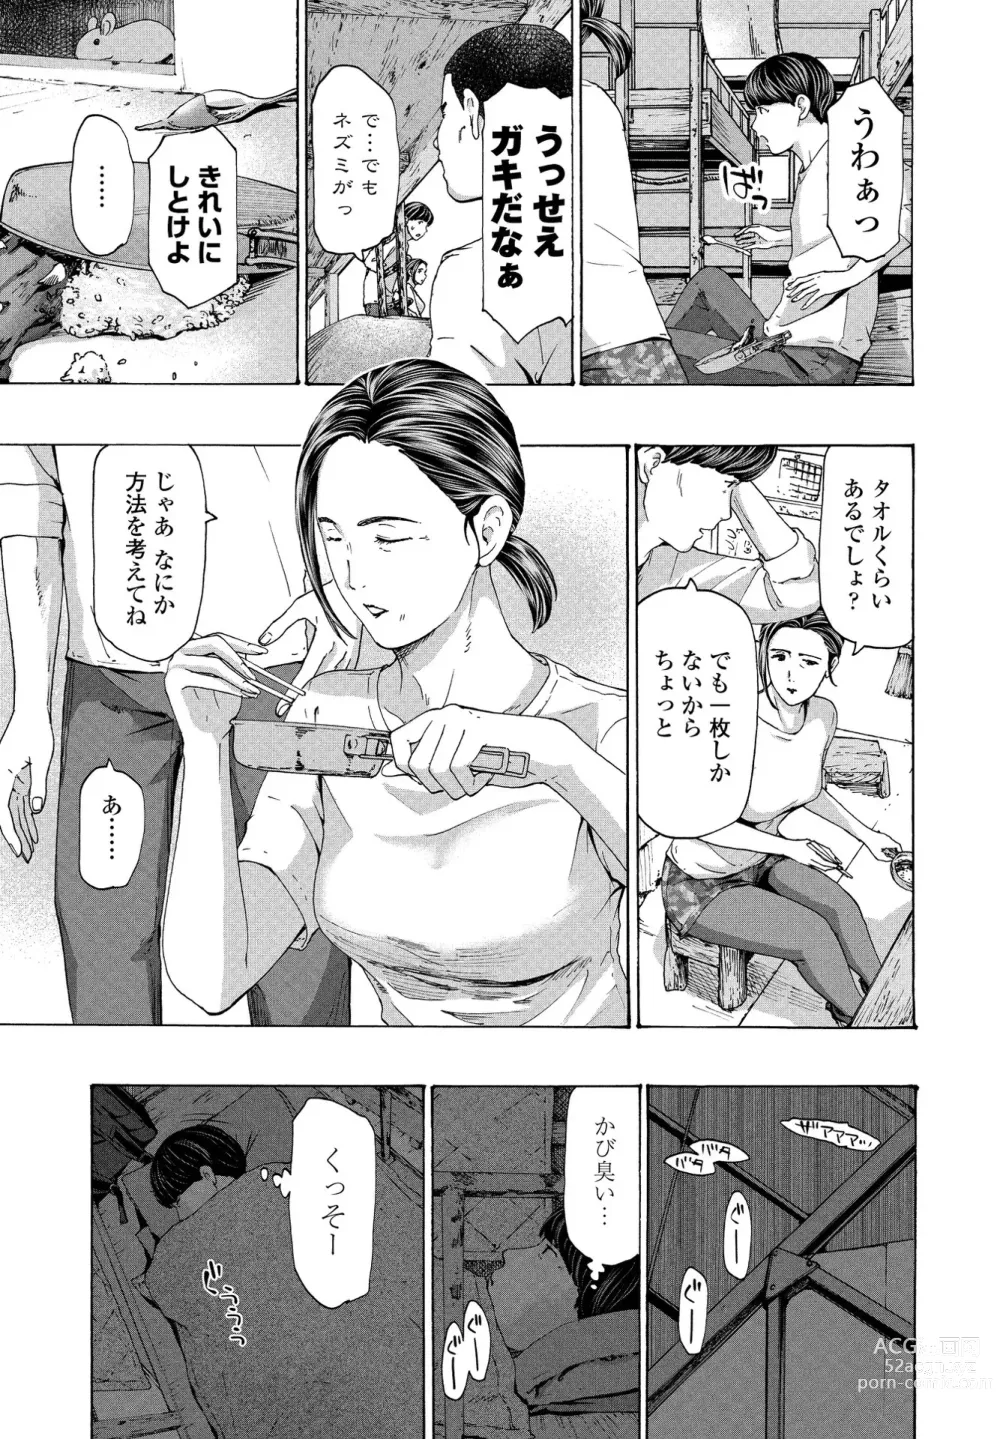 Page 5 of manga Hinangoya nite